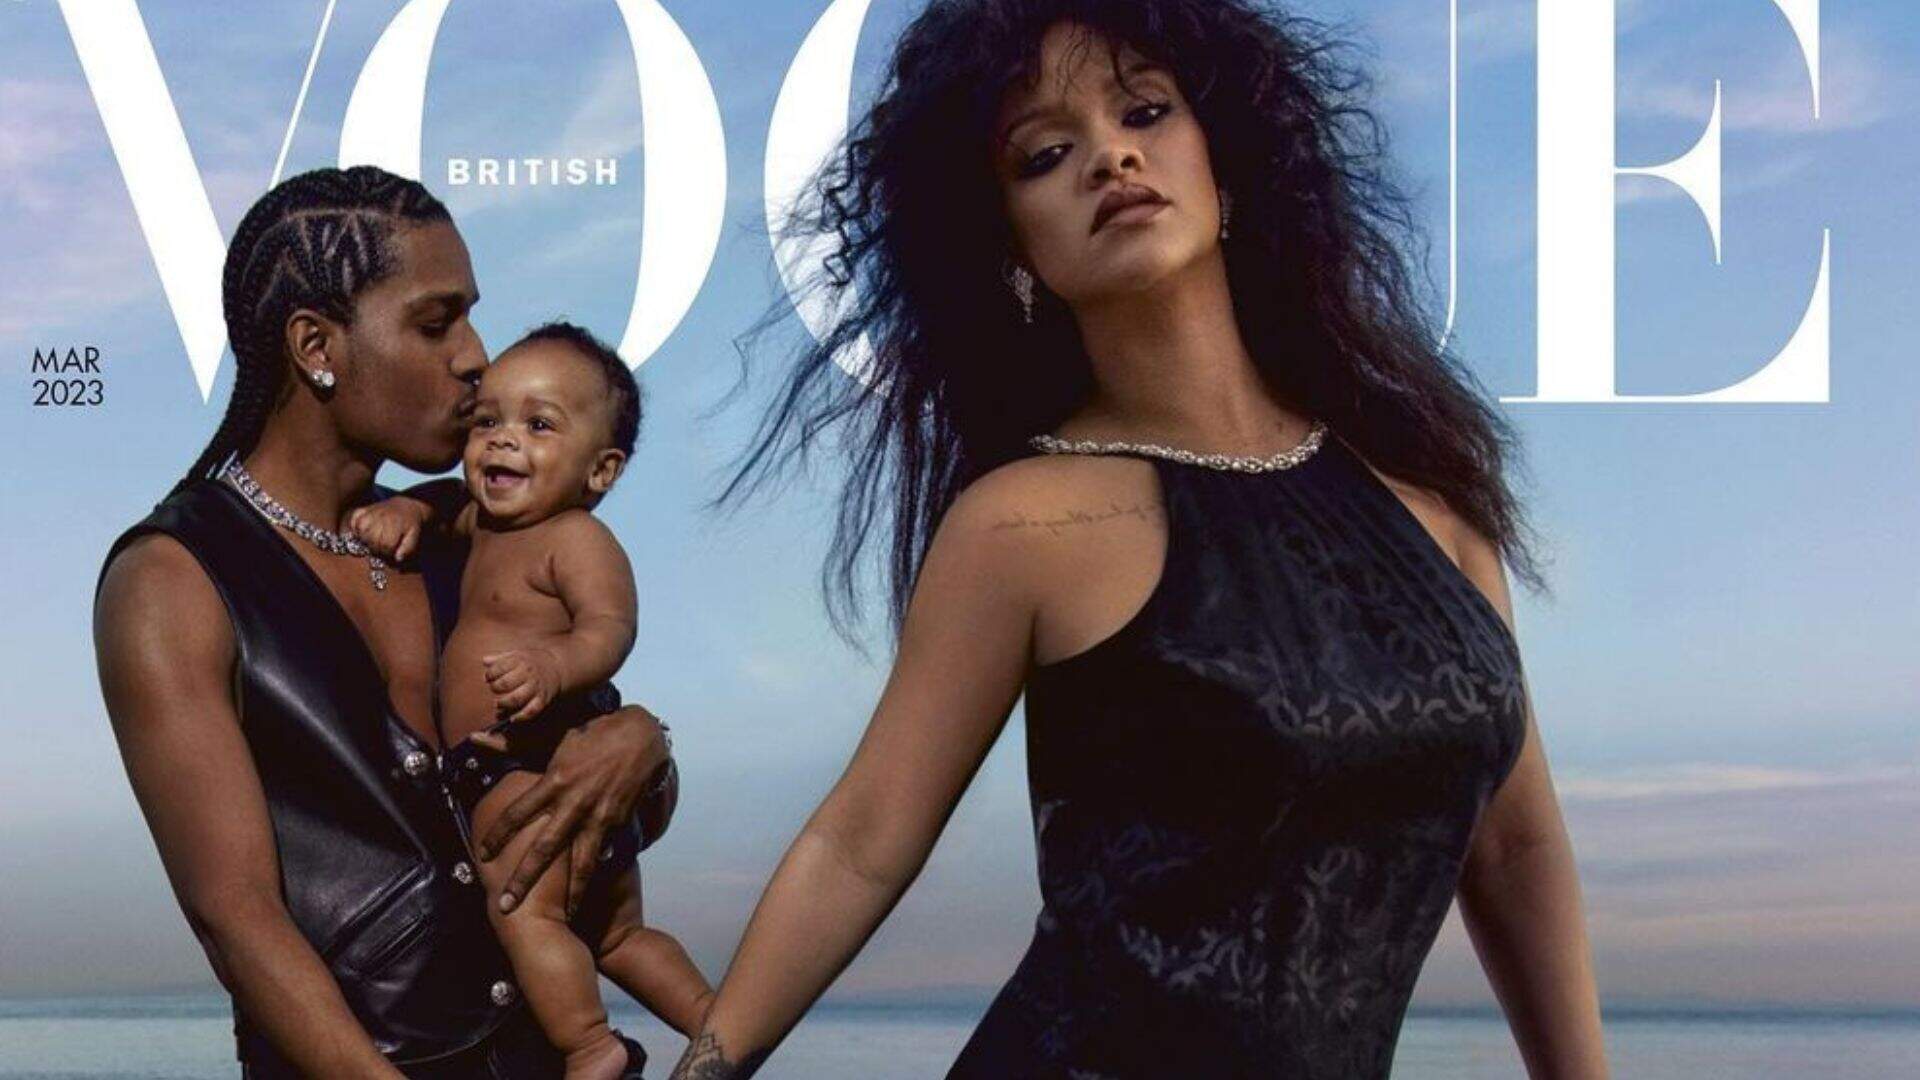 Família reunida! Rihanna posa com o filho e o marido A$AP Rocky para a Vogue britânica